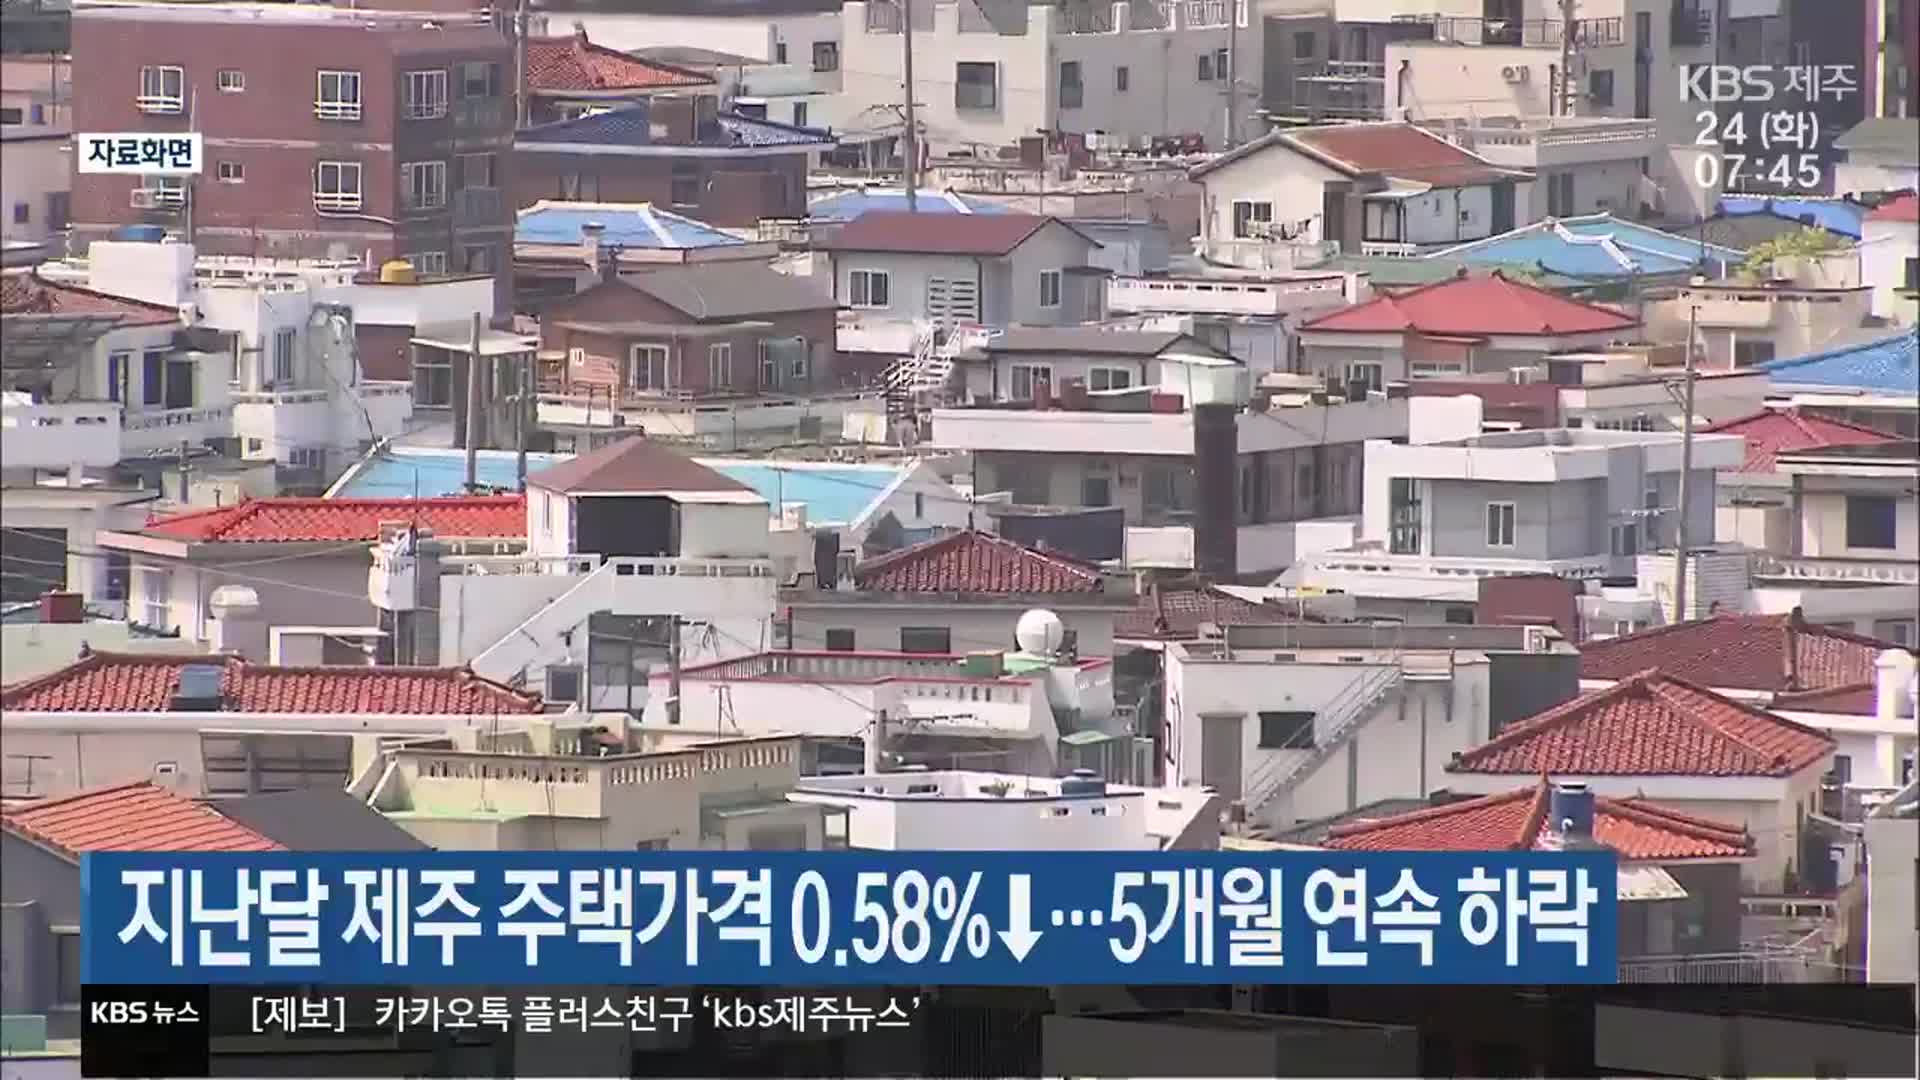 지난달 제주 주택가격 0.58%↓…5개월 연속 하락